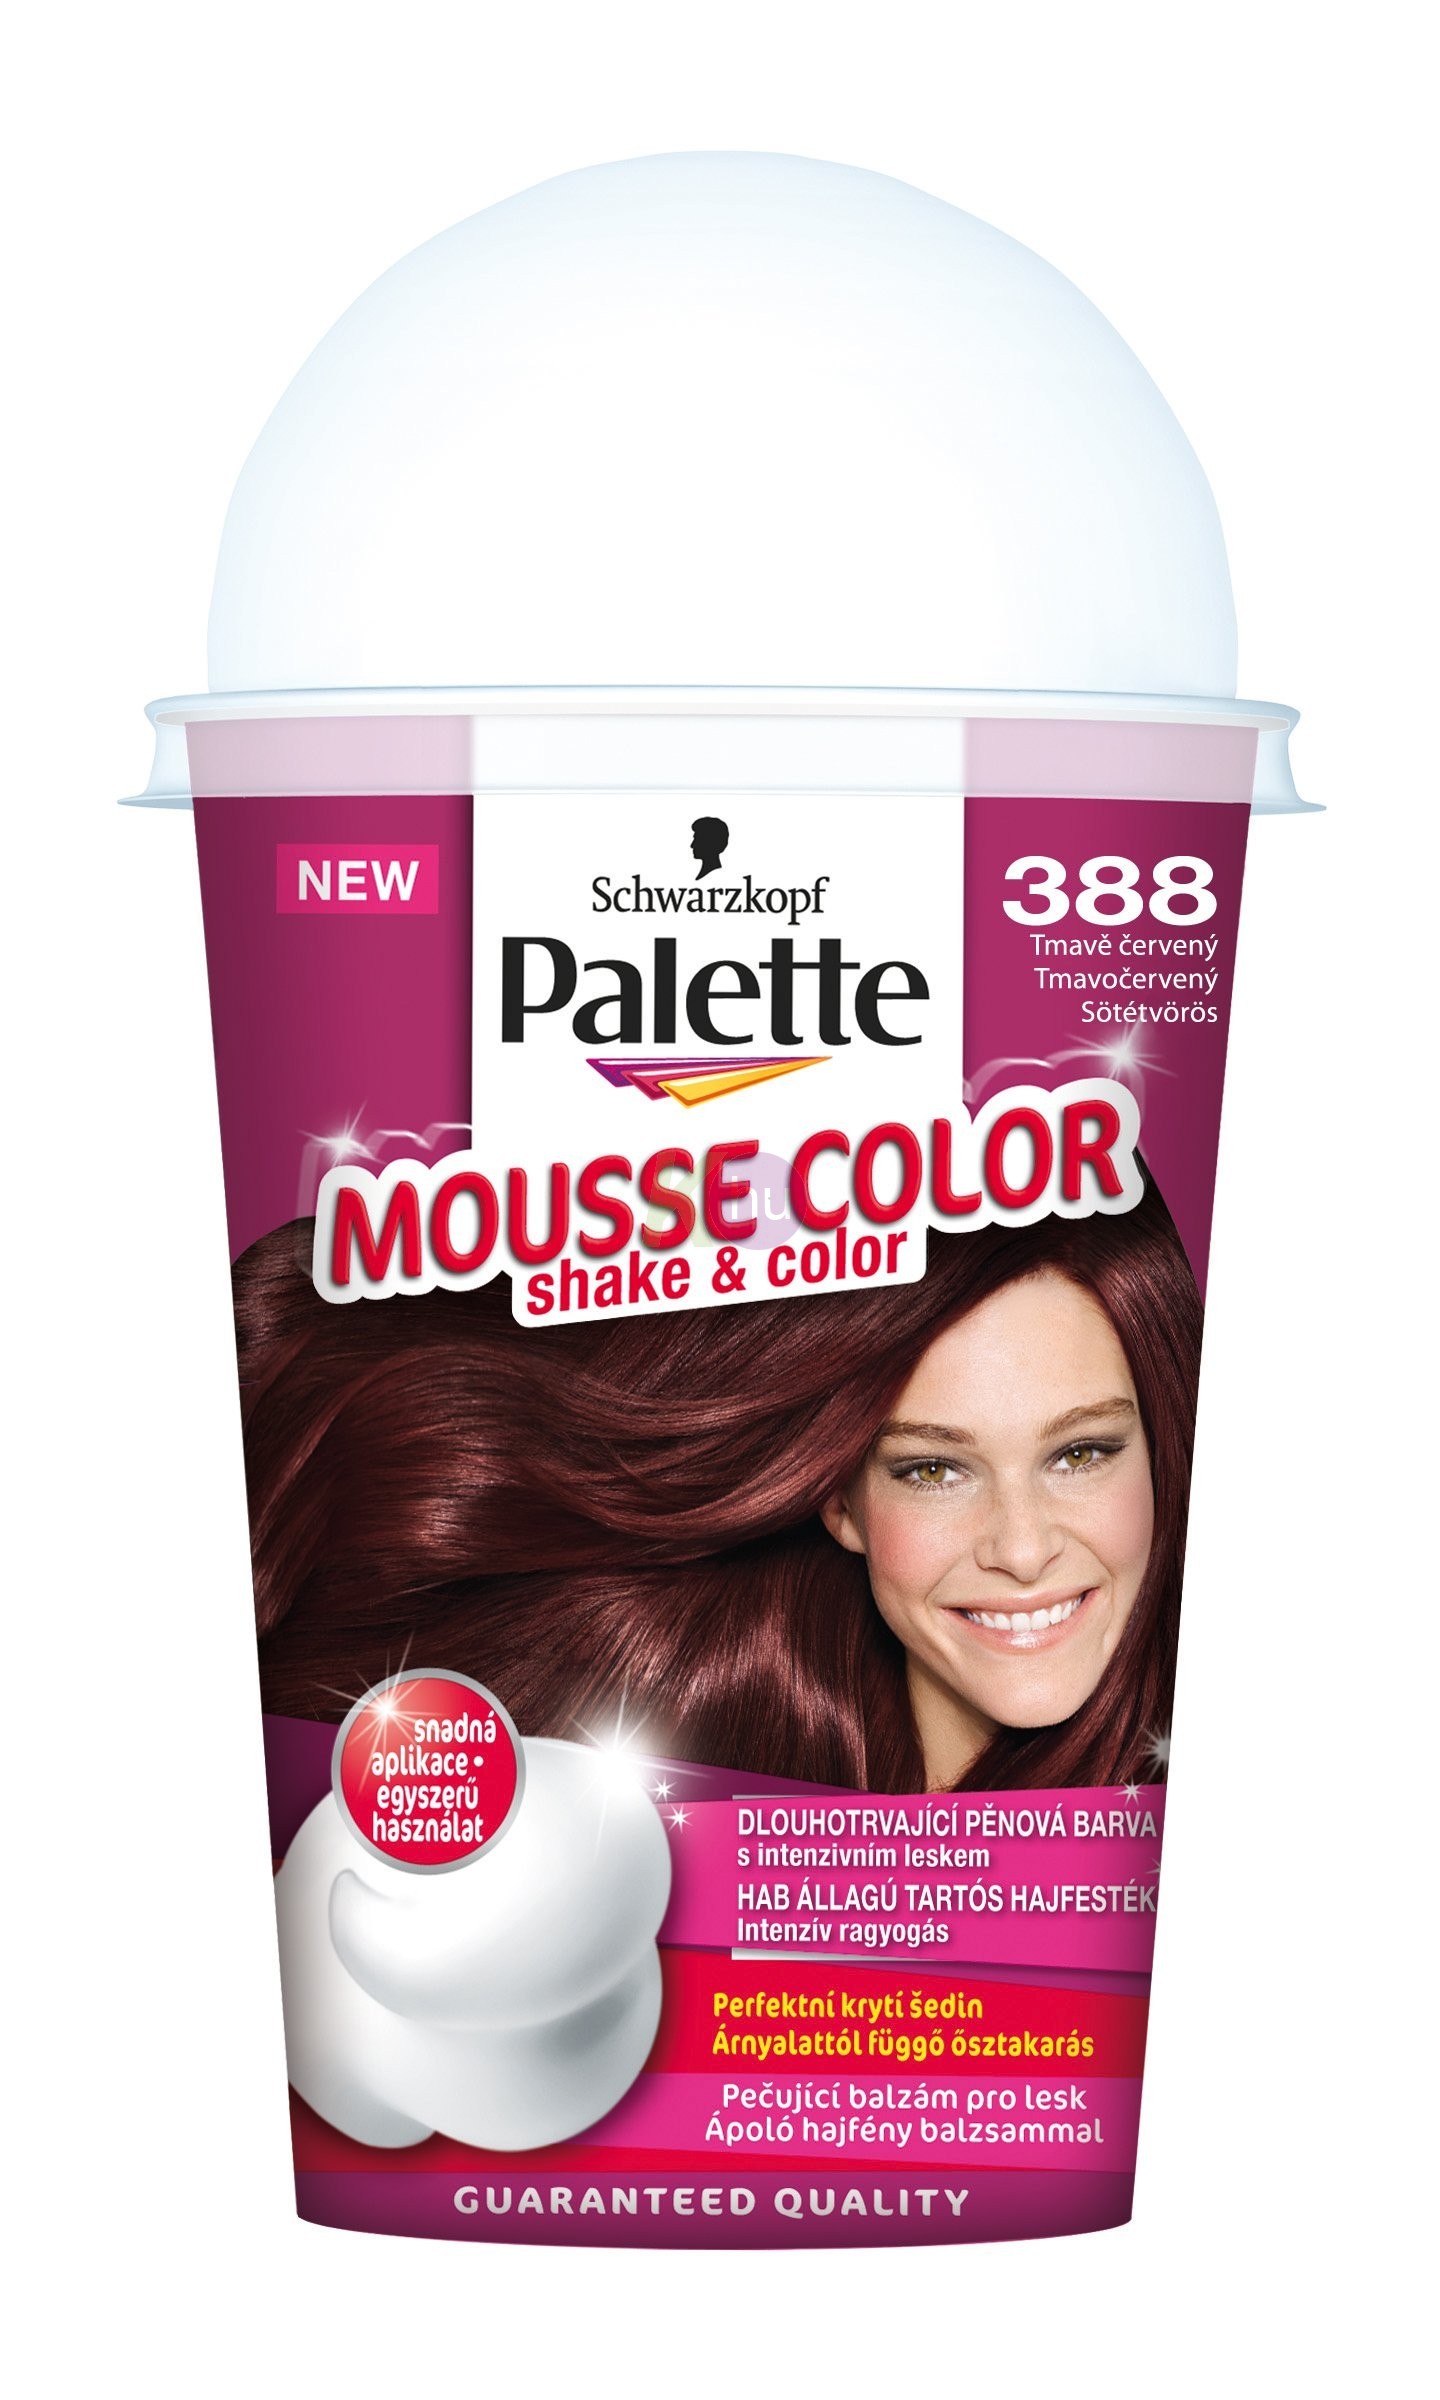 Palette Mousse Color 388 sötétvörös 13100877